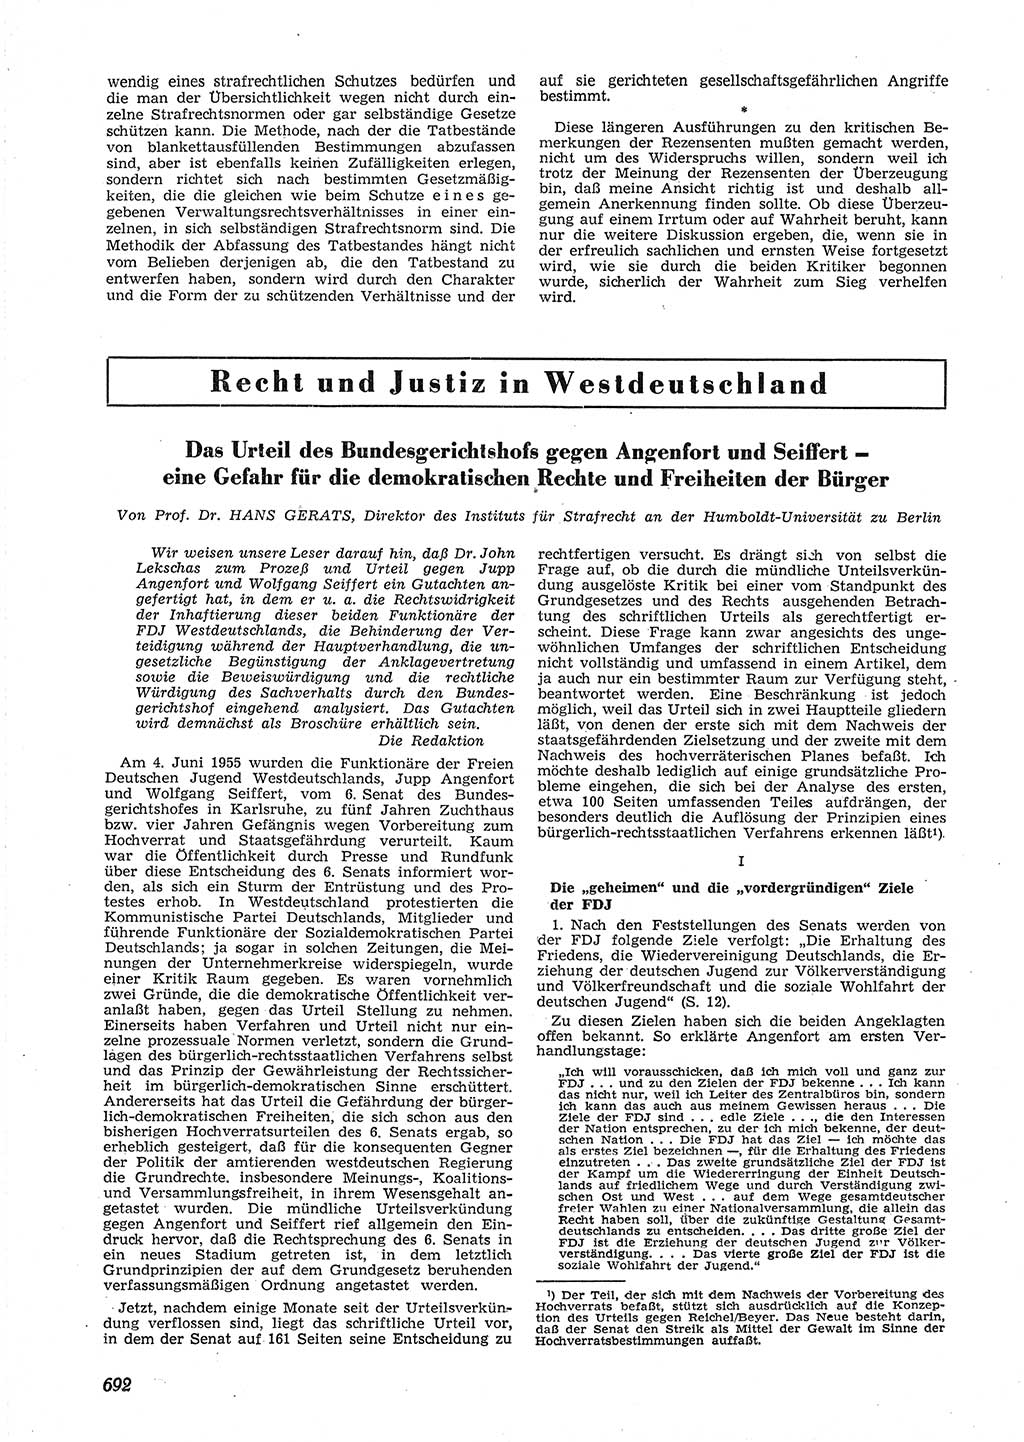 Neue Justiz (NJ), Zeitschrift für Recht und Rechtswissenschaft [Deutsche Demokratische Republik (DDR)], 9. Jahrgang 1955, Seite 692 (NJ DDR 1955, S. 692)